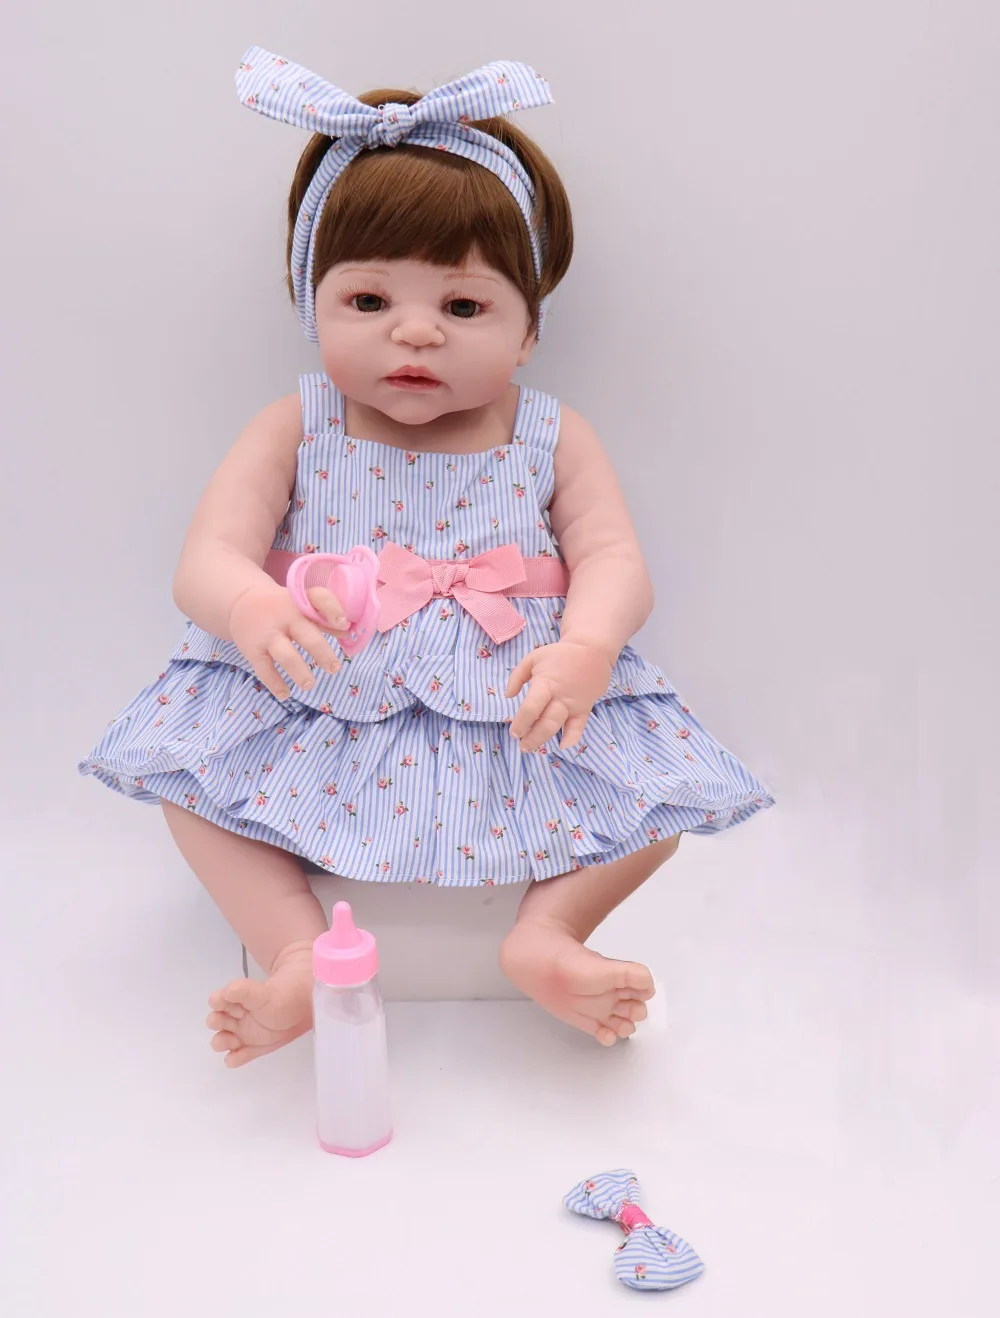 

56cm real Lifelike Reborn Baby Dolls White Skin Babies Doll Full Vinyl Body So cute Girl Model Doll For Toddler bebe Toy Gifts